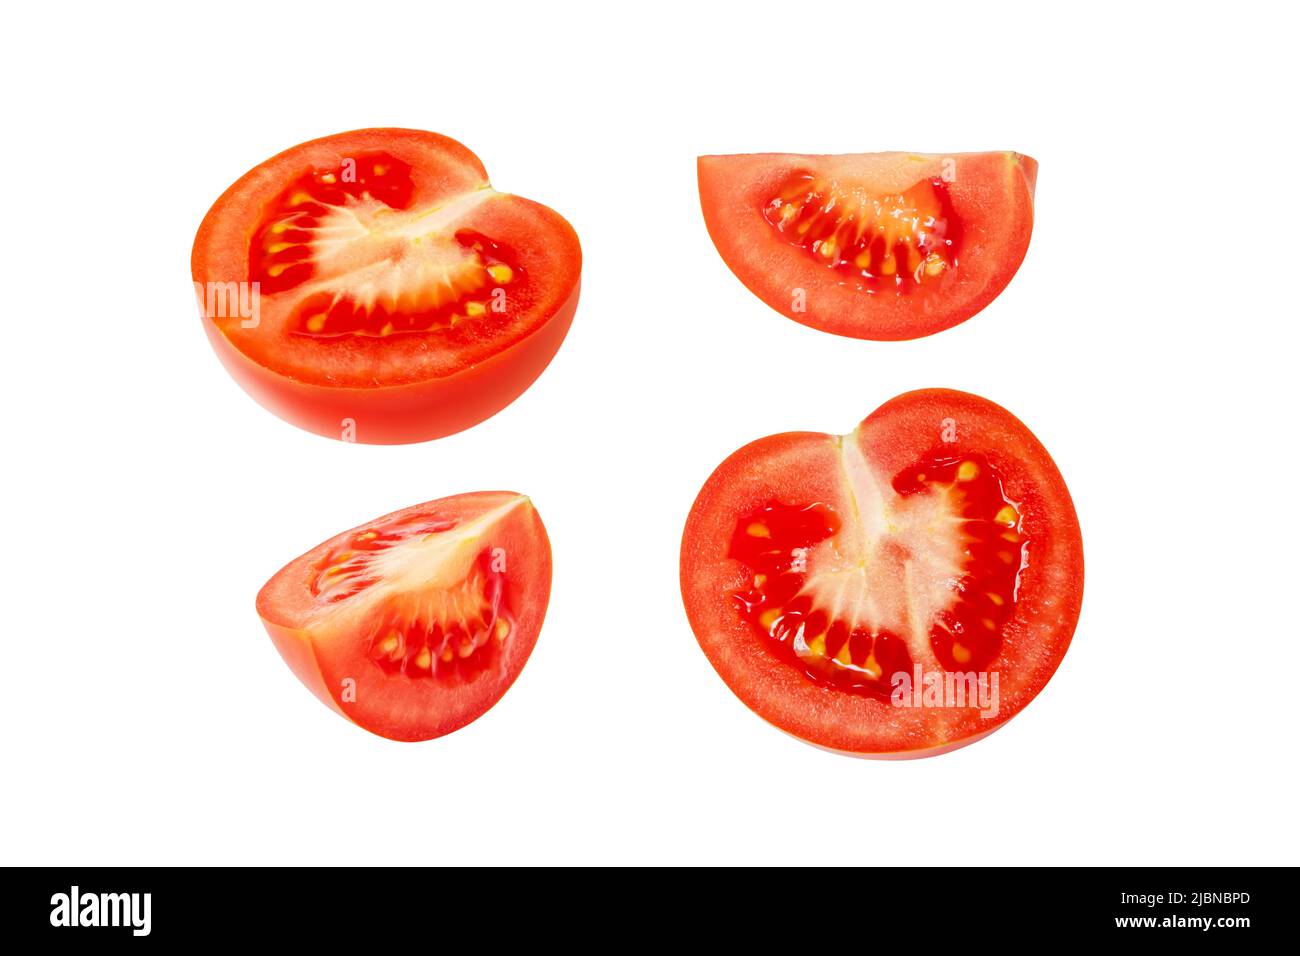 Tomato vegetable cut set isolated on white background. Solanum lycopersicum ripe fruit. Stock Photo